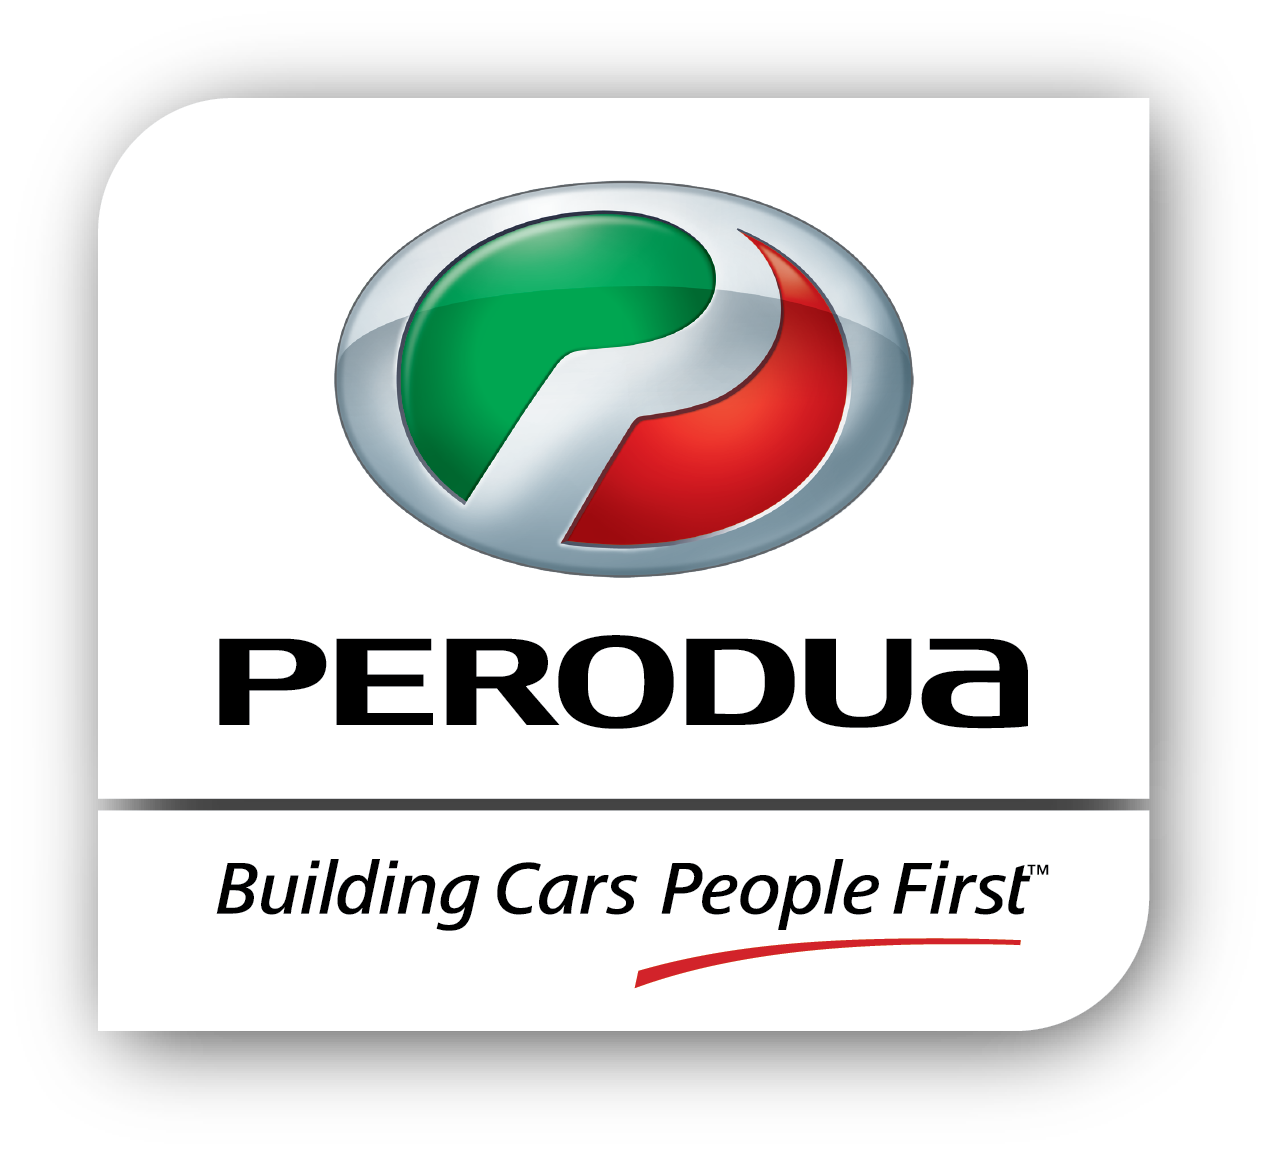 Perodua and Daihatsu